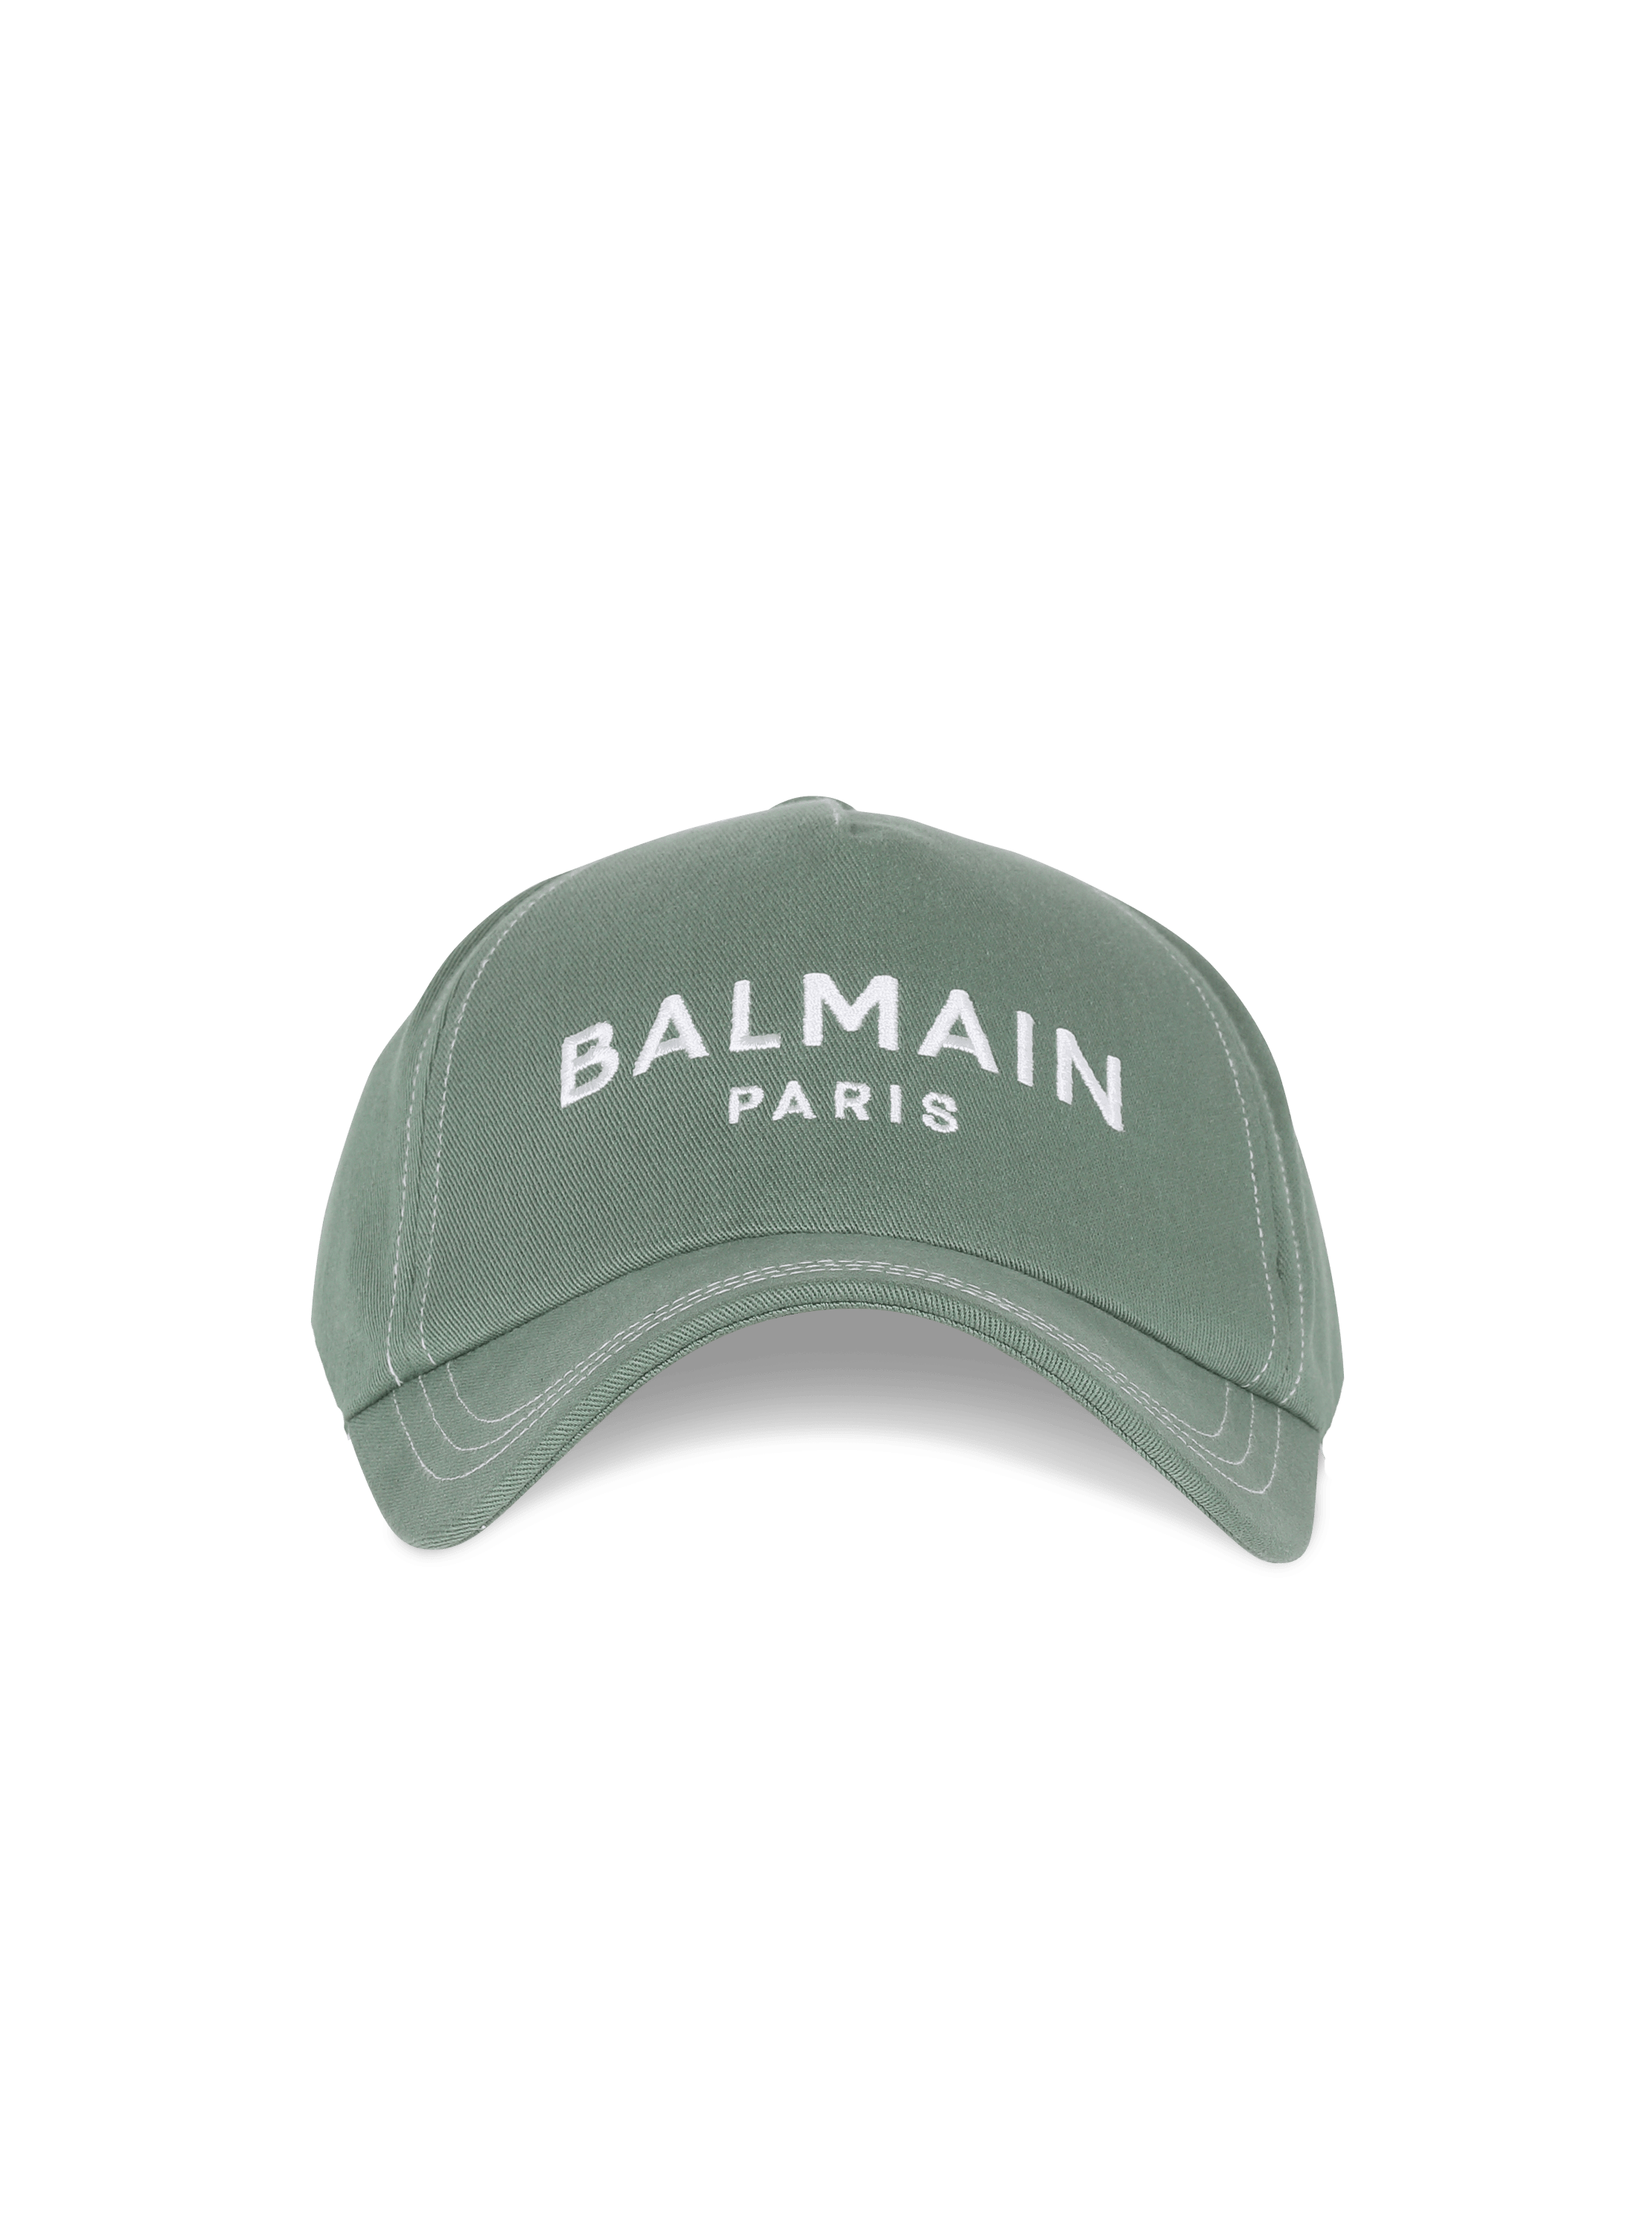 Balmain embroidered cotton cap